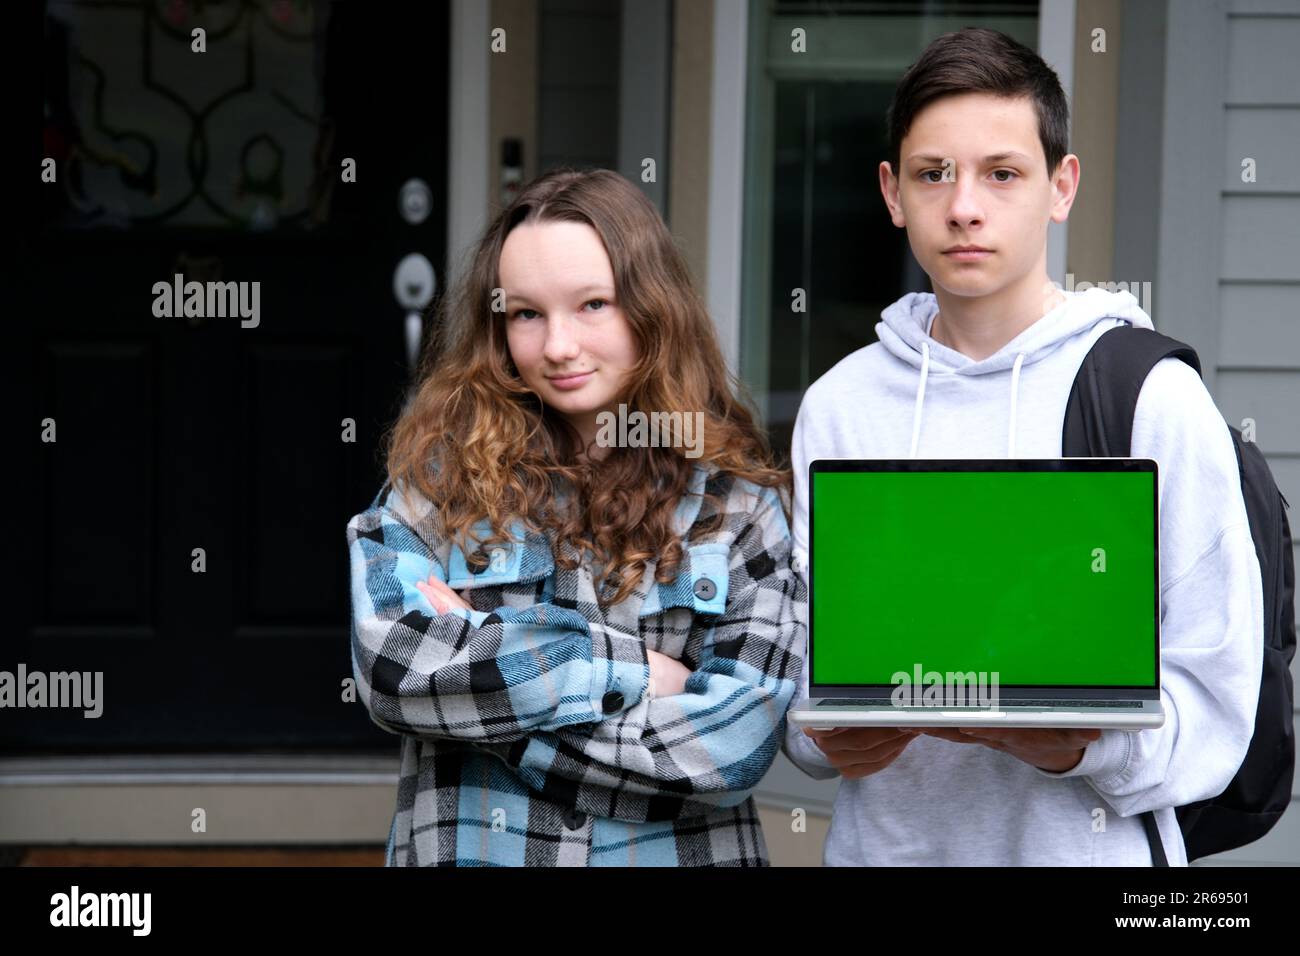 Ernsthafte Teenager stehen mit Laptop und Rucksack Schultasche zeigen grünen Bildschirm Chrom Schlüssel auf Laptop Herbst Frühlingsstudium Stand in der Nähe von zu Hause Werbung Online-Sprachkurse Junge und Mädchen Stockfoto